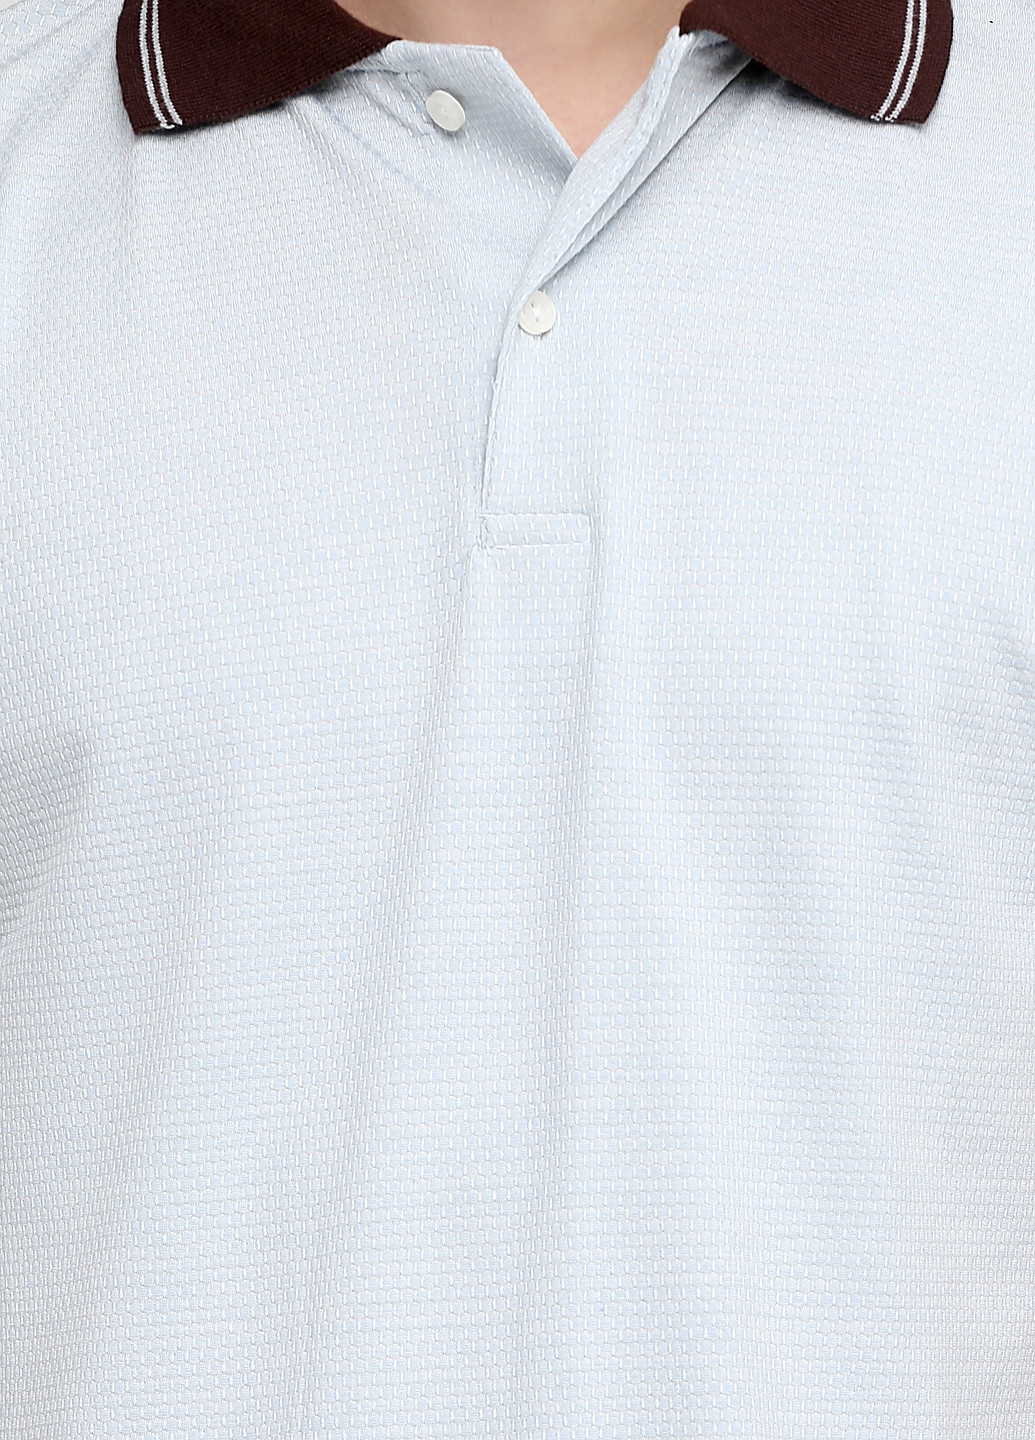 Бледно-голубой футболка-поло для мужчин Chiarotex однотонная